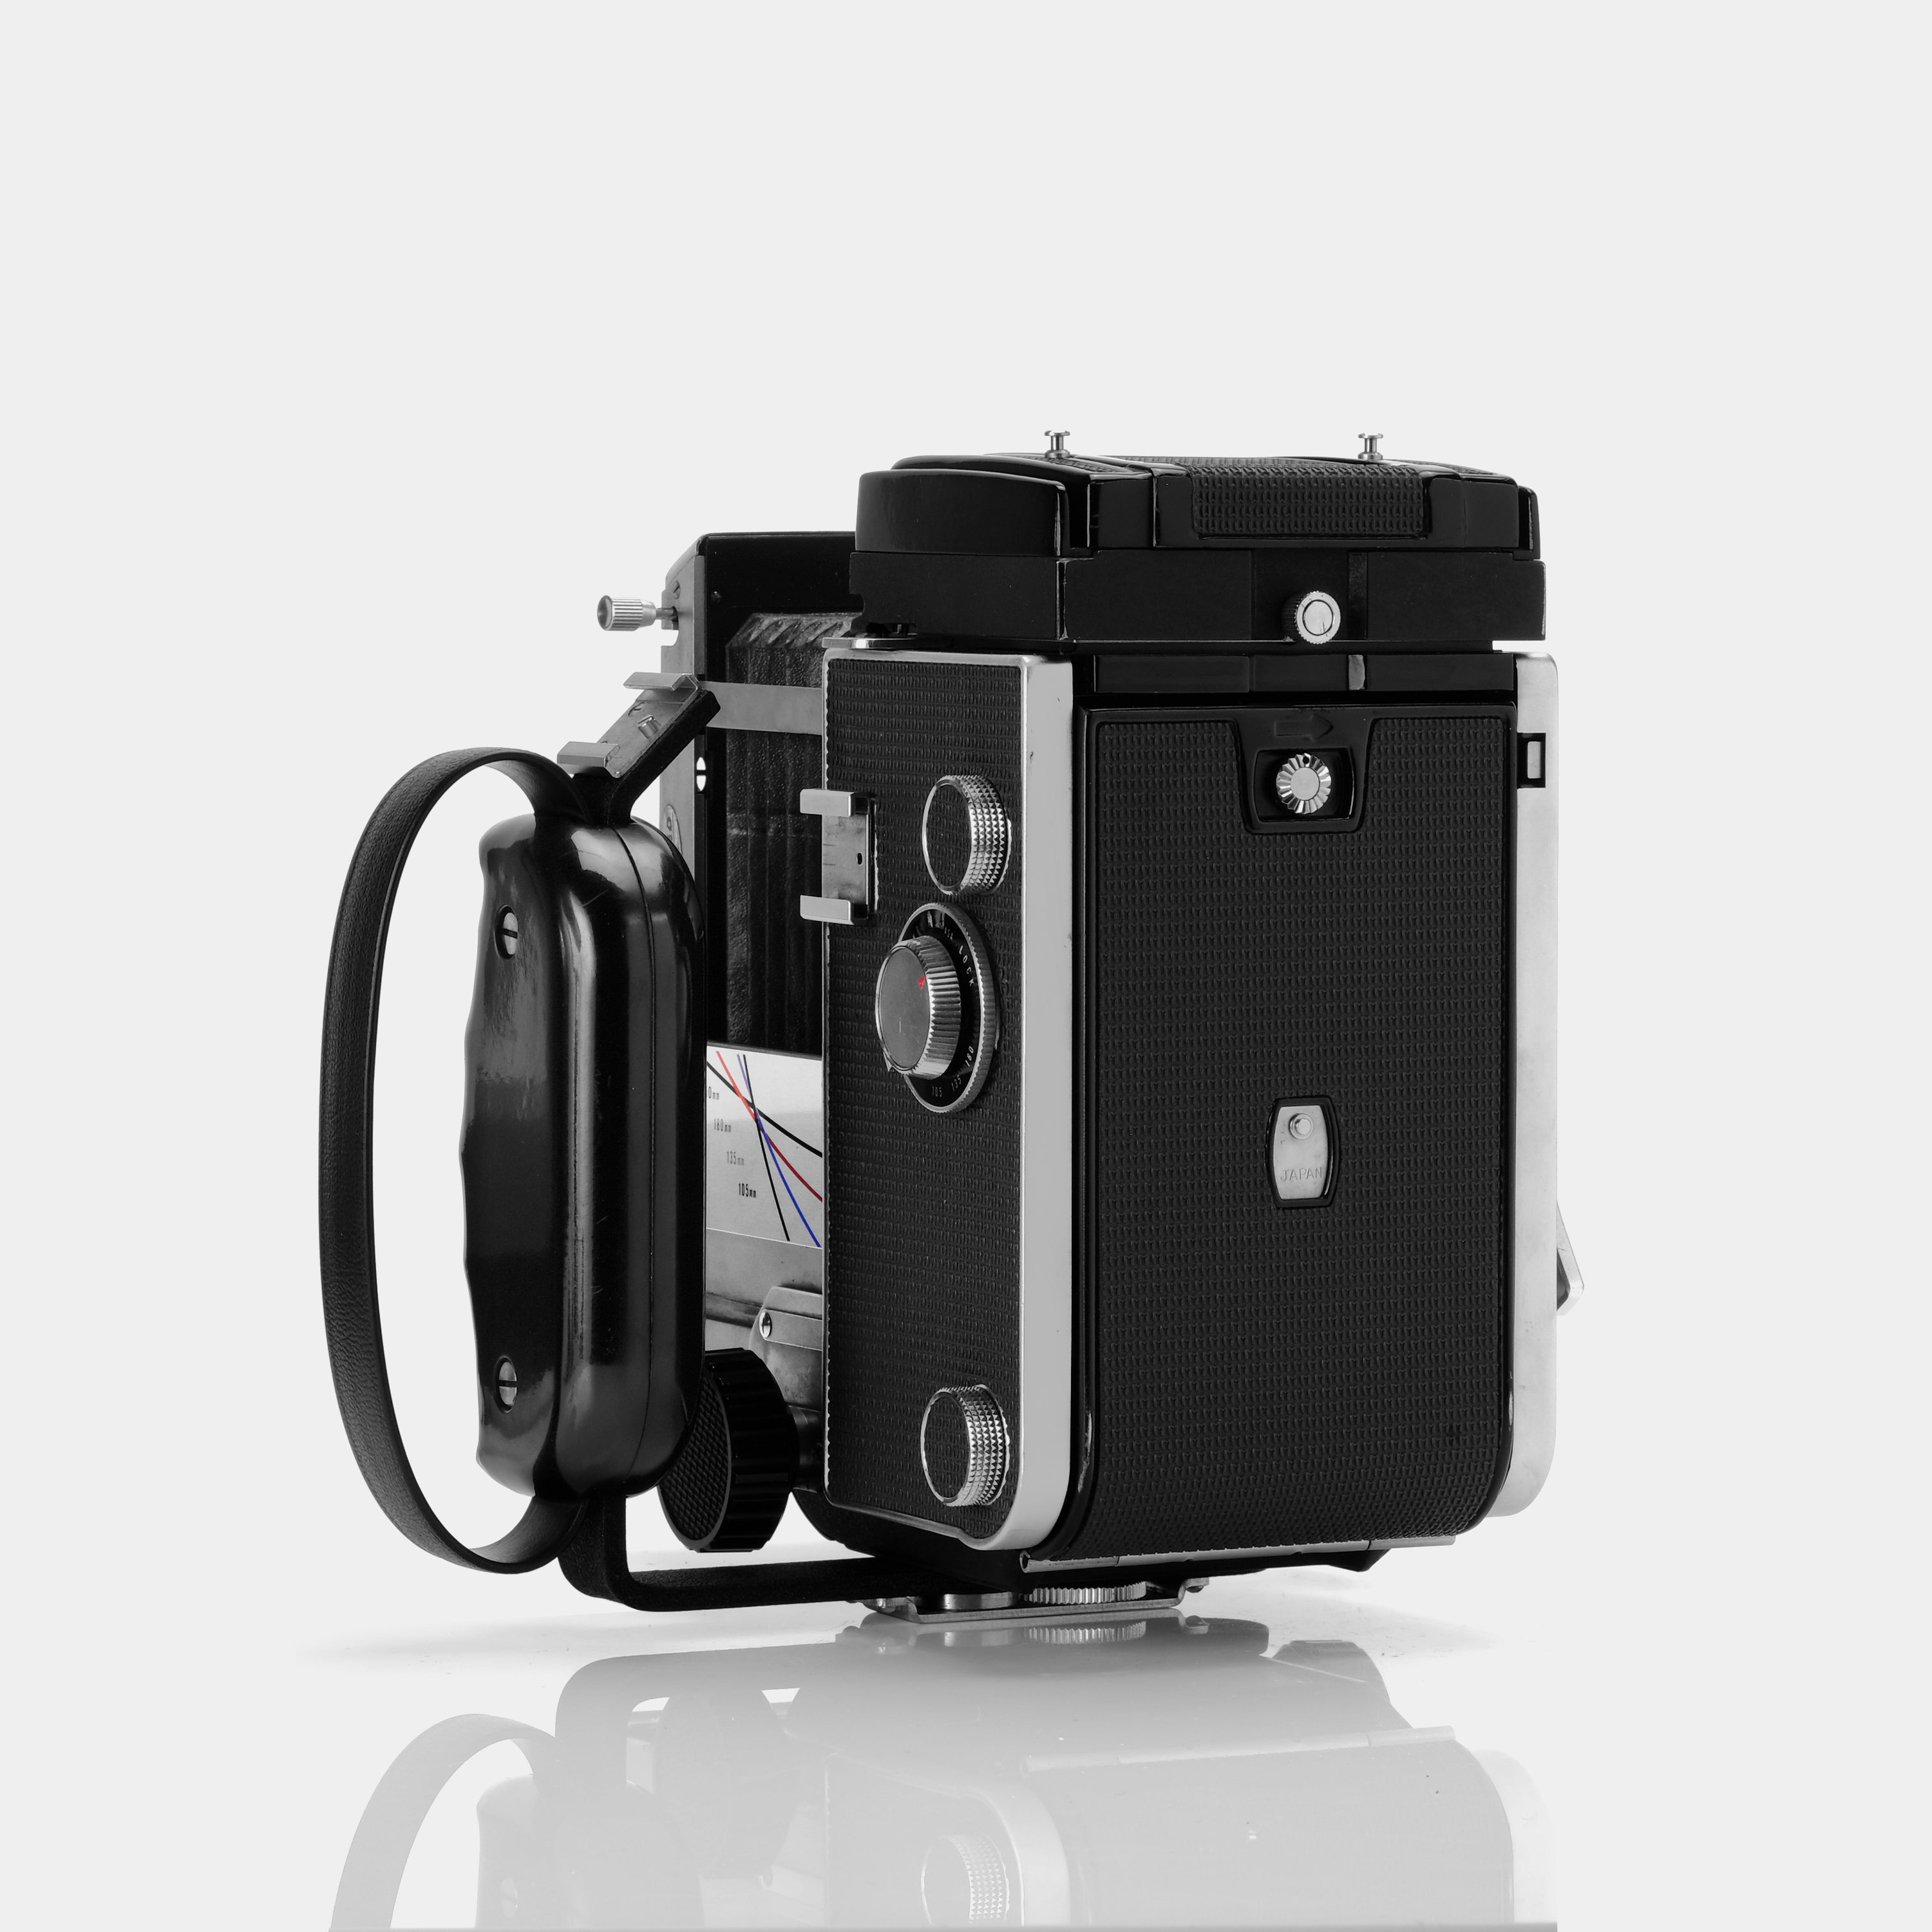 Mamiya C33 Professional Twin Lens Reflex 120 Film Camera